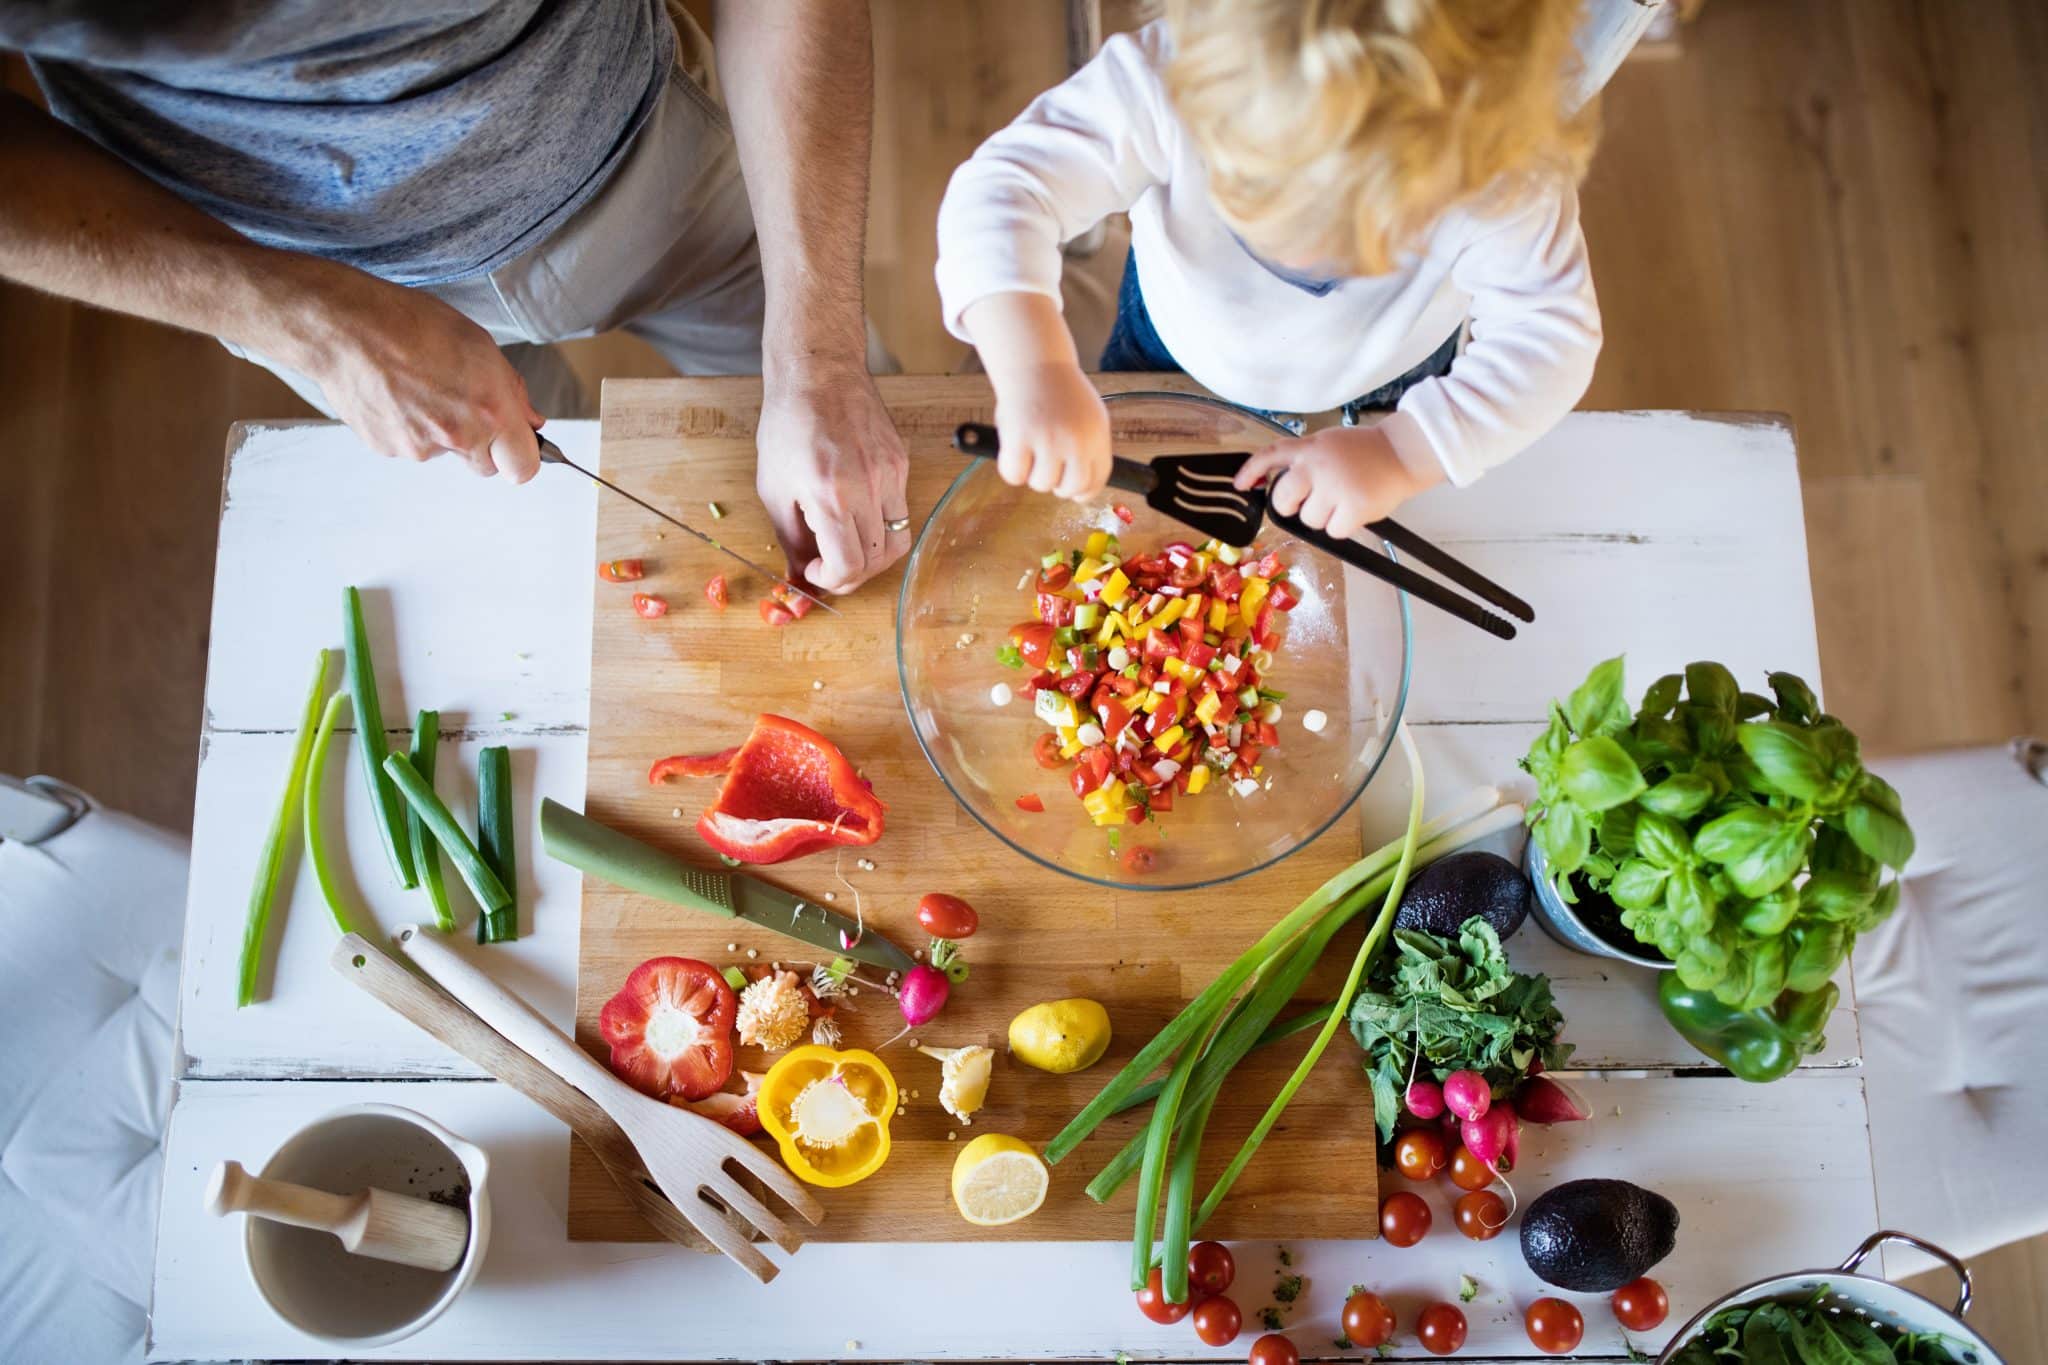 Obenansicht eines männlichen Körpers und eines Kinds beim Kochen mit Gemüse.